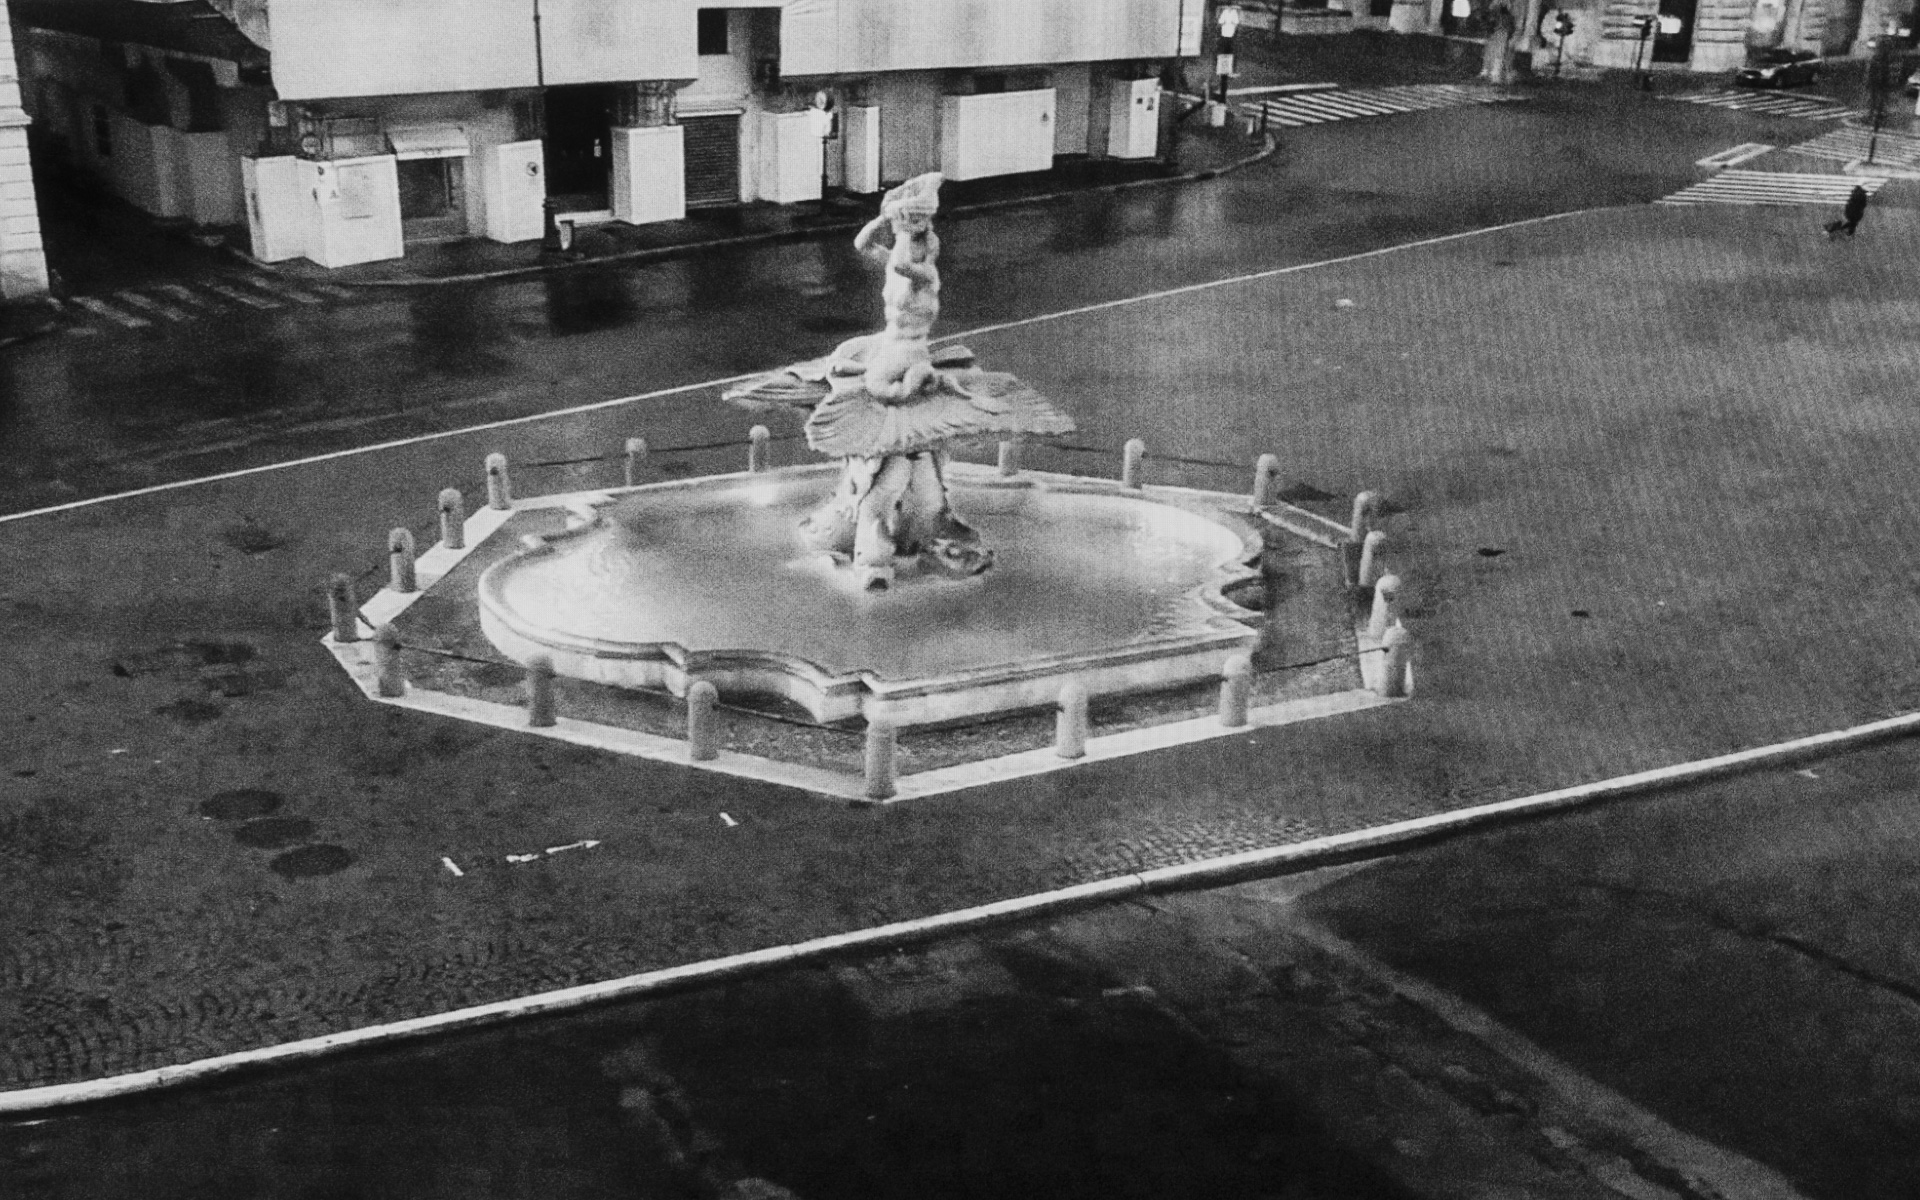 Rome, Barberini square - Triton fountain on depopulated Barberini Square in Rome, March 26. 2020.